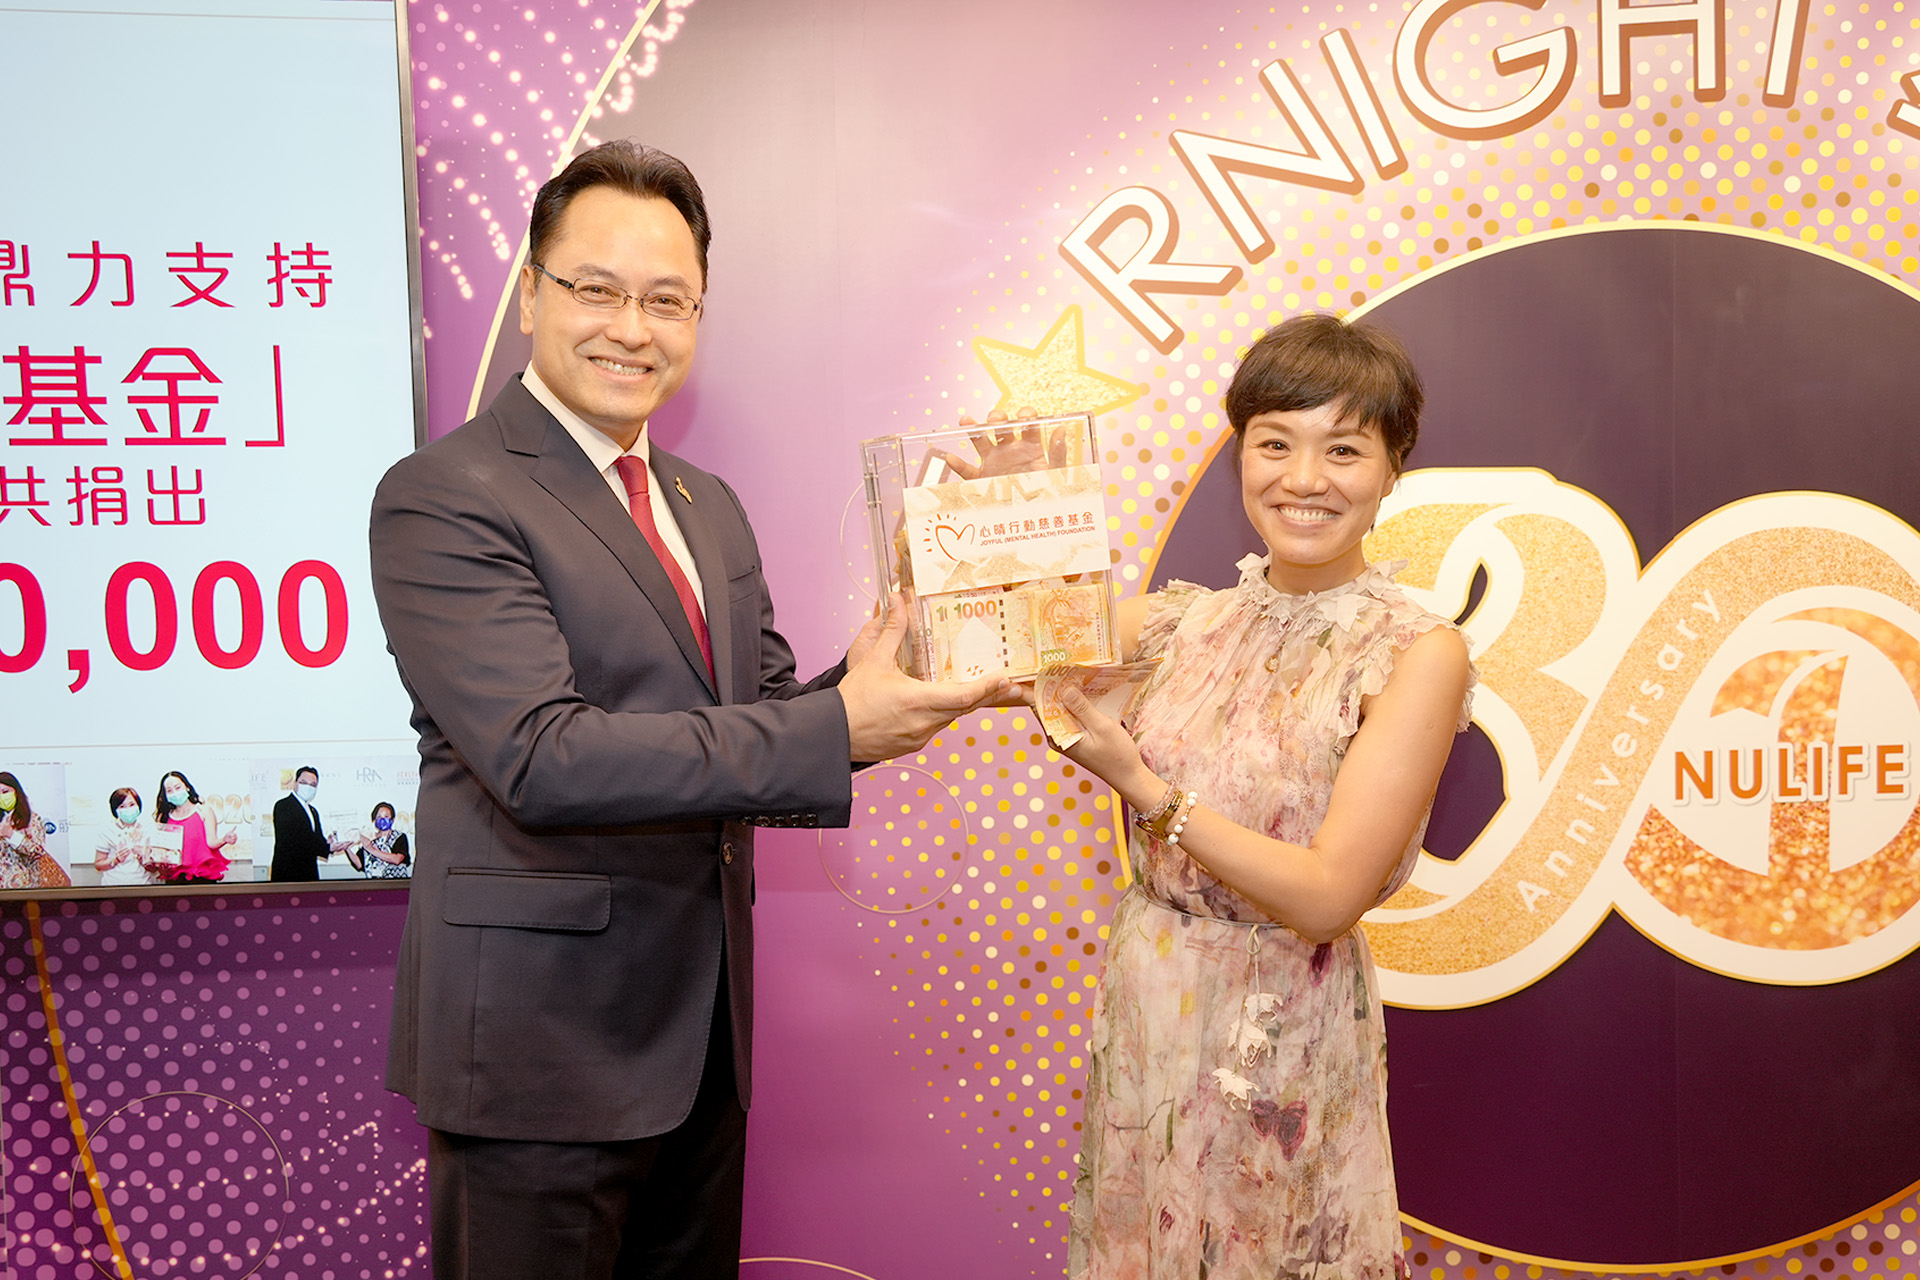 恭賀從陳宛沁小姐星級百萬富翁遊戲贏取HK$10,000獎金並與公司合共捐助HK$8000予「心晴行動慈善基金」